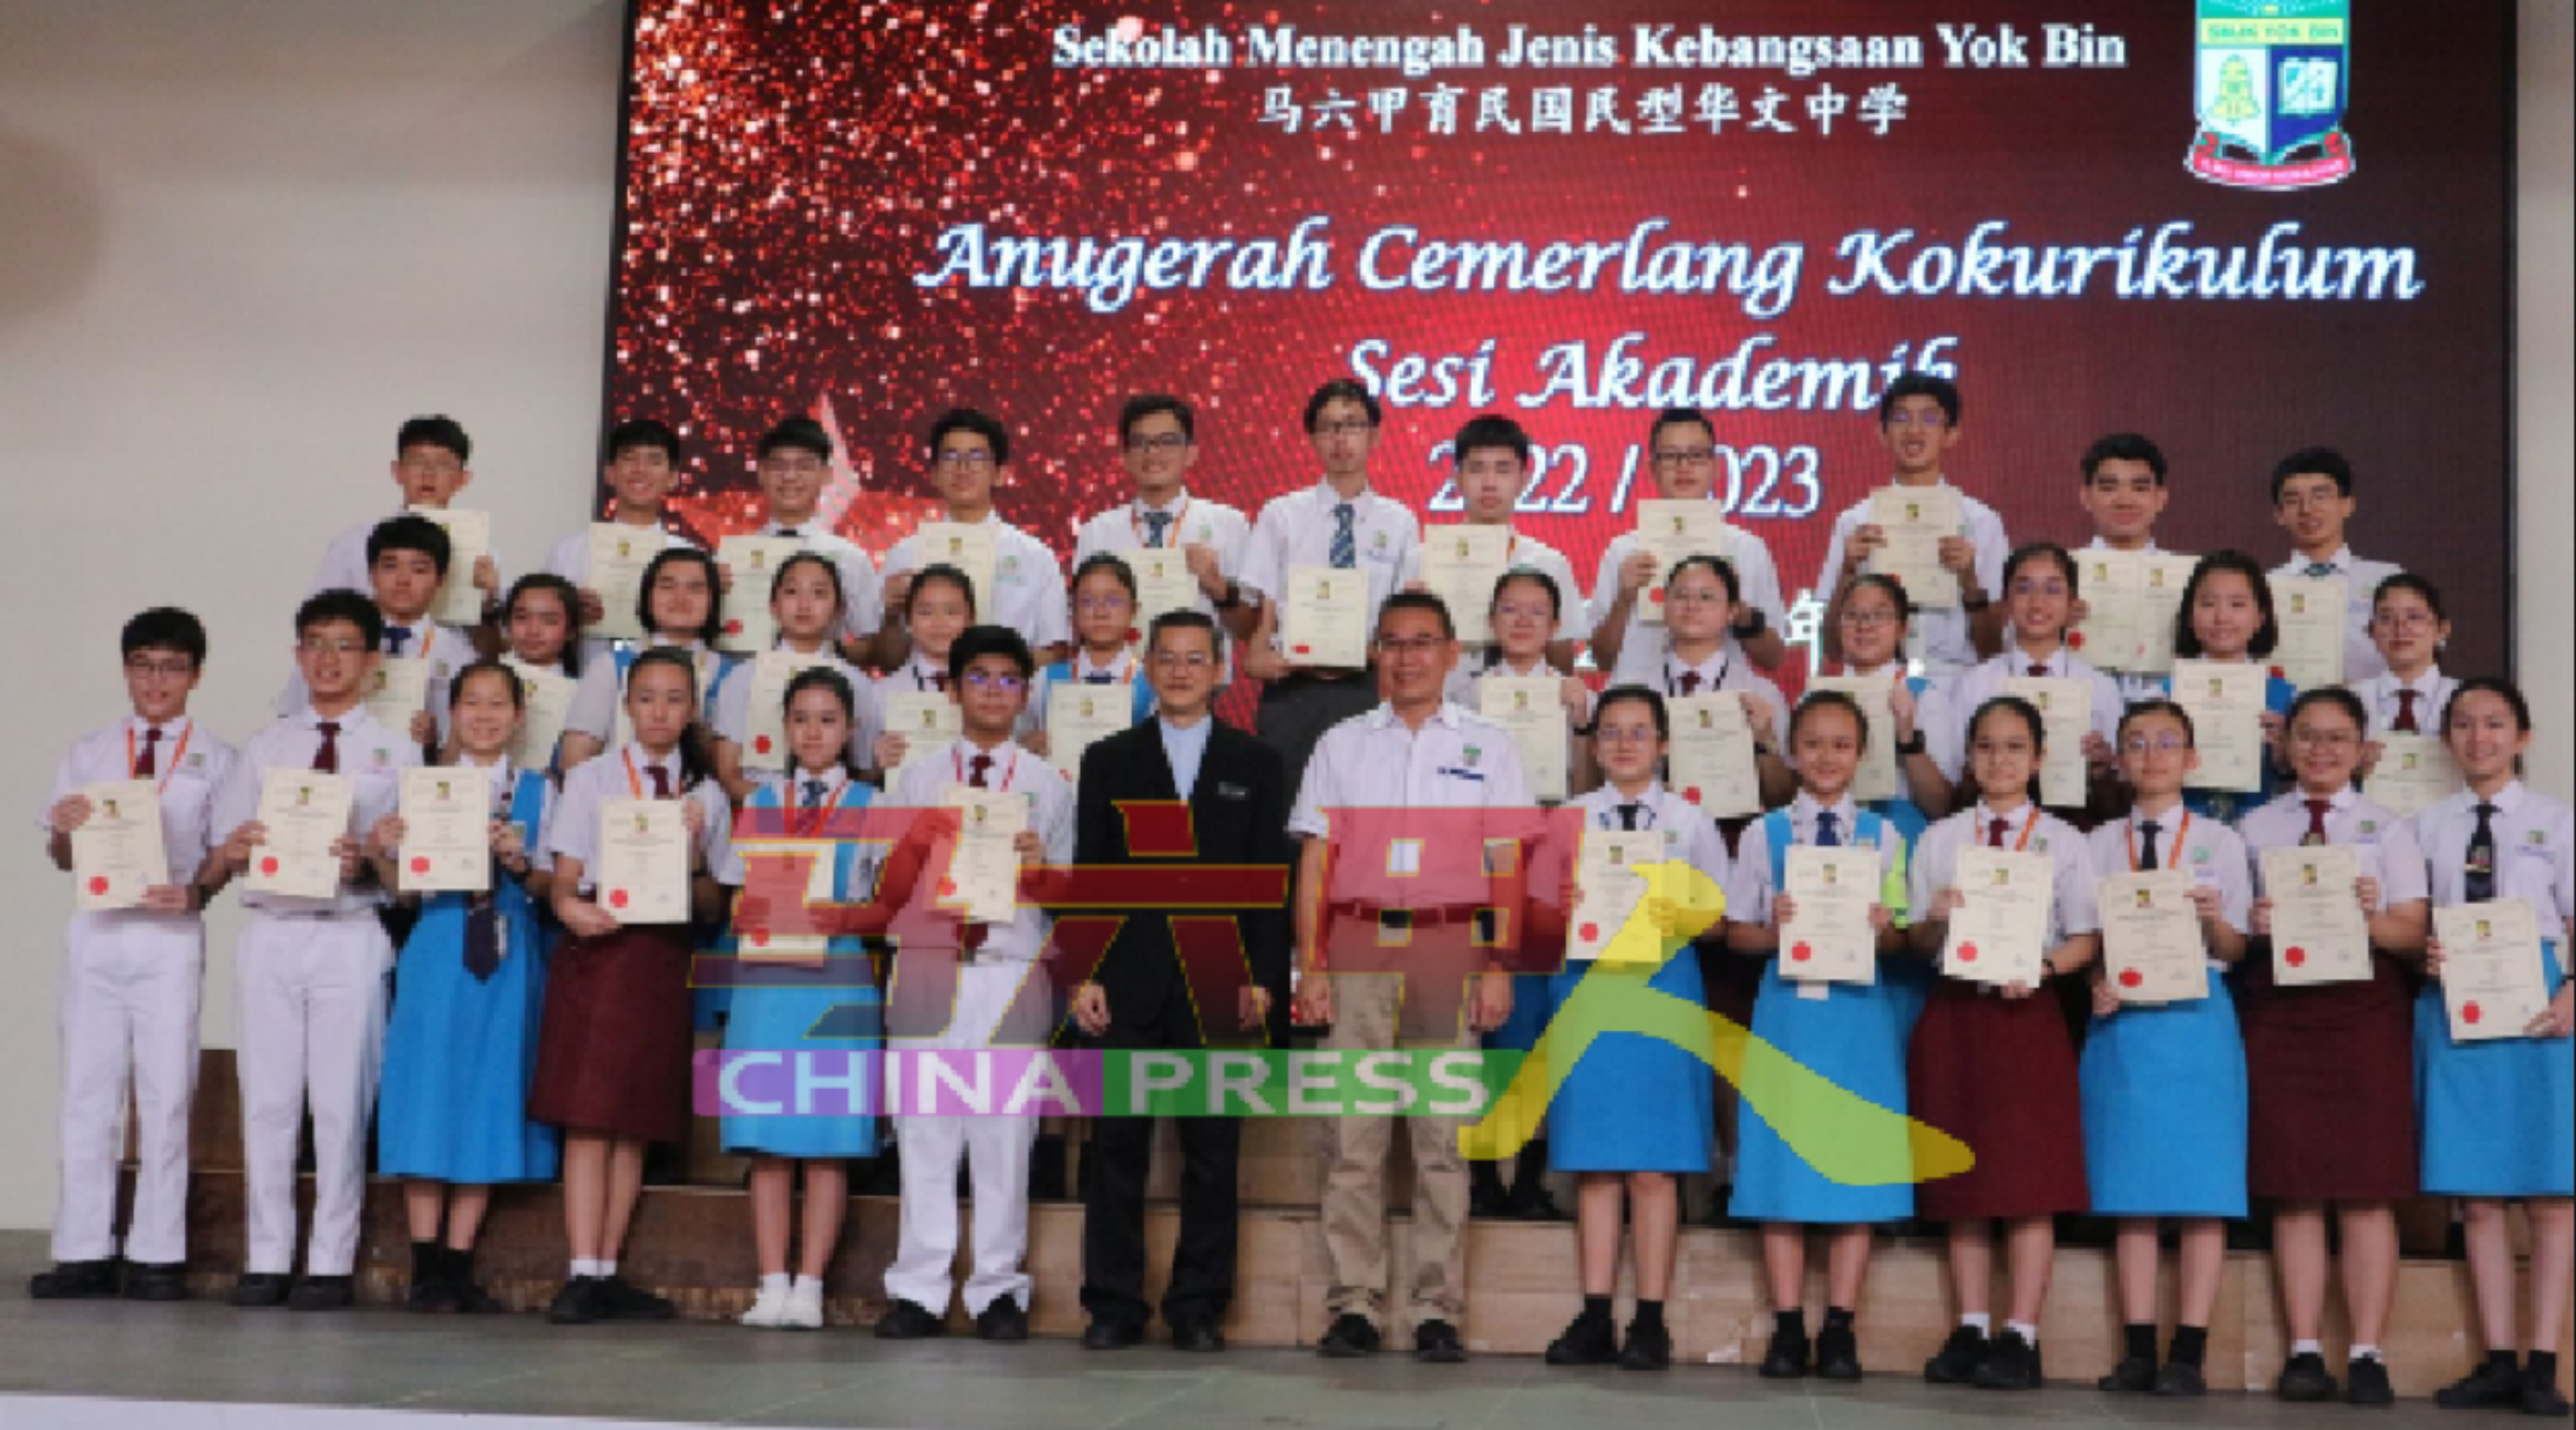 学生获奖后与吴大鹏（前排左7起）及纪适财合照。